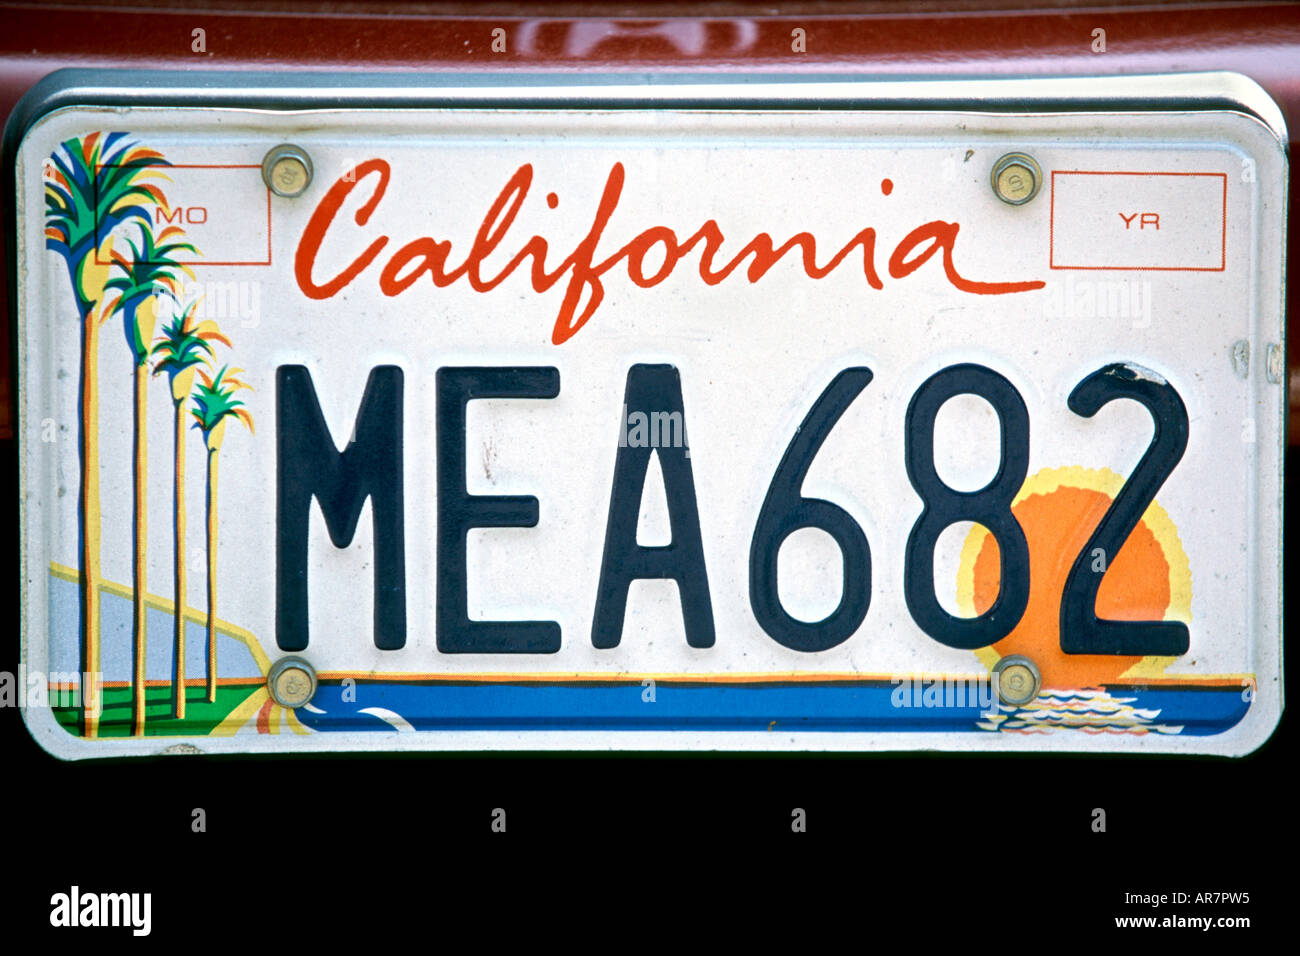 Kalifornische Auto Kennzeichen Stockfotografie - Alamy